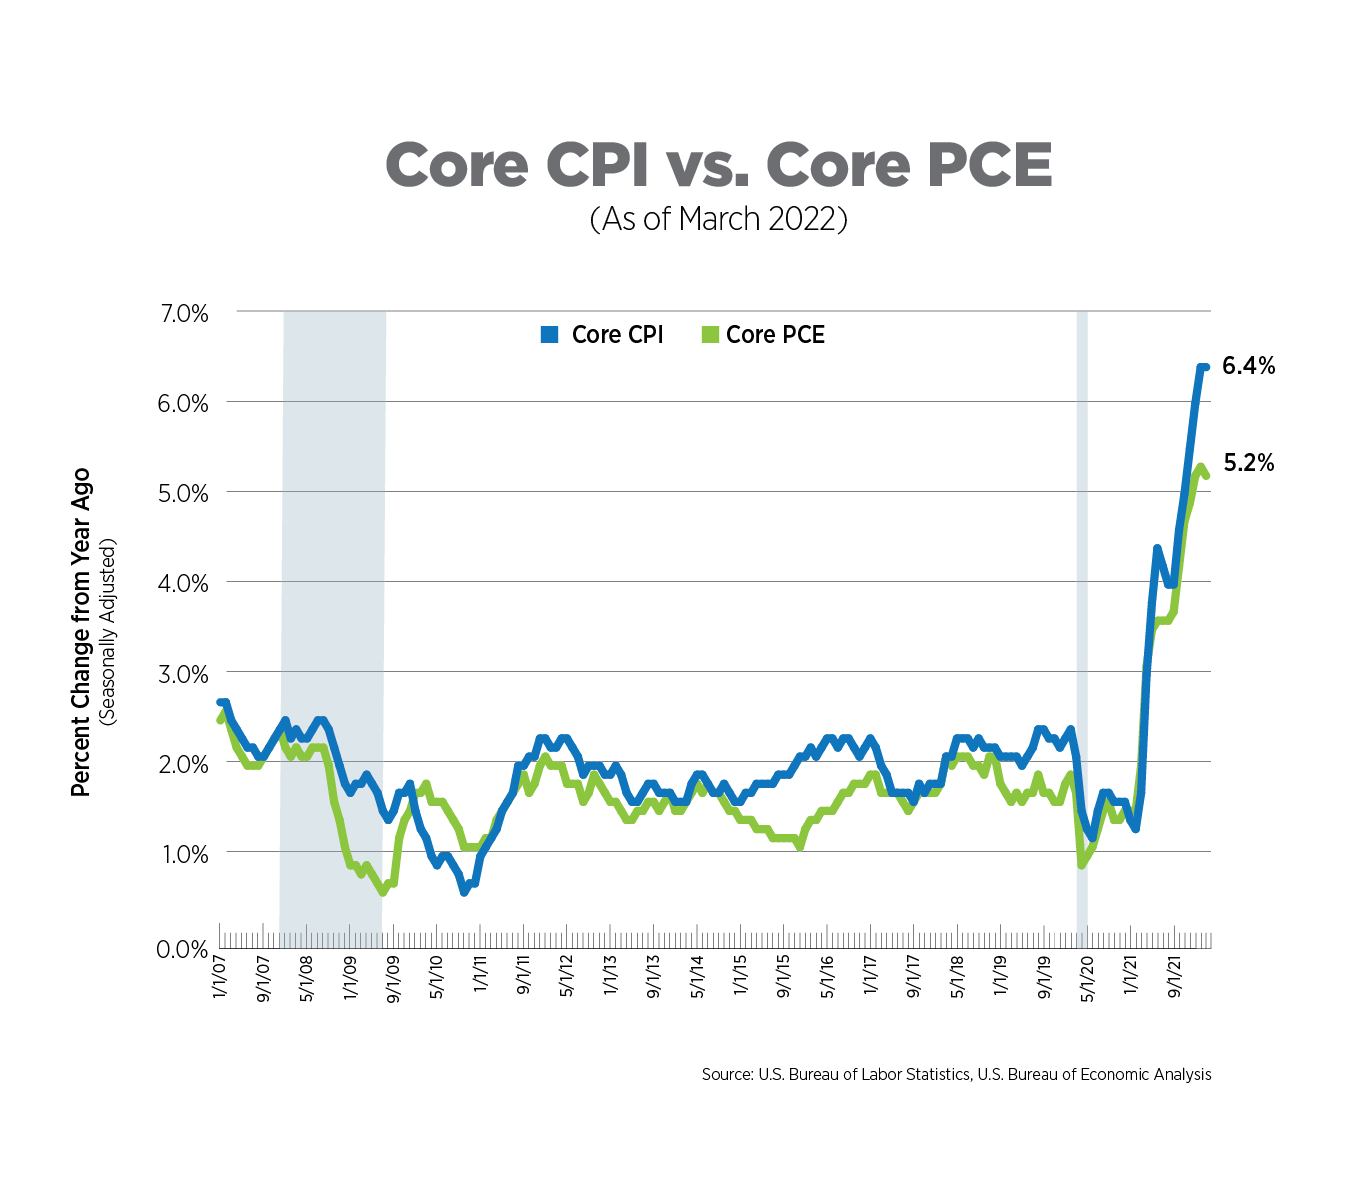 core cpi vs core pce, as of march 2022